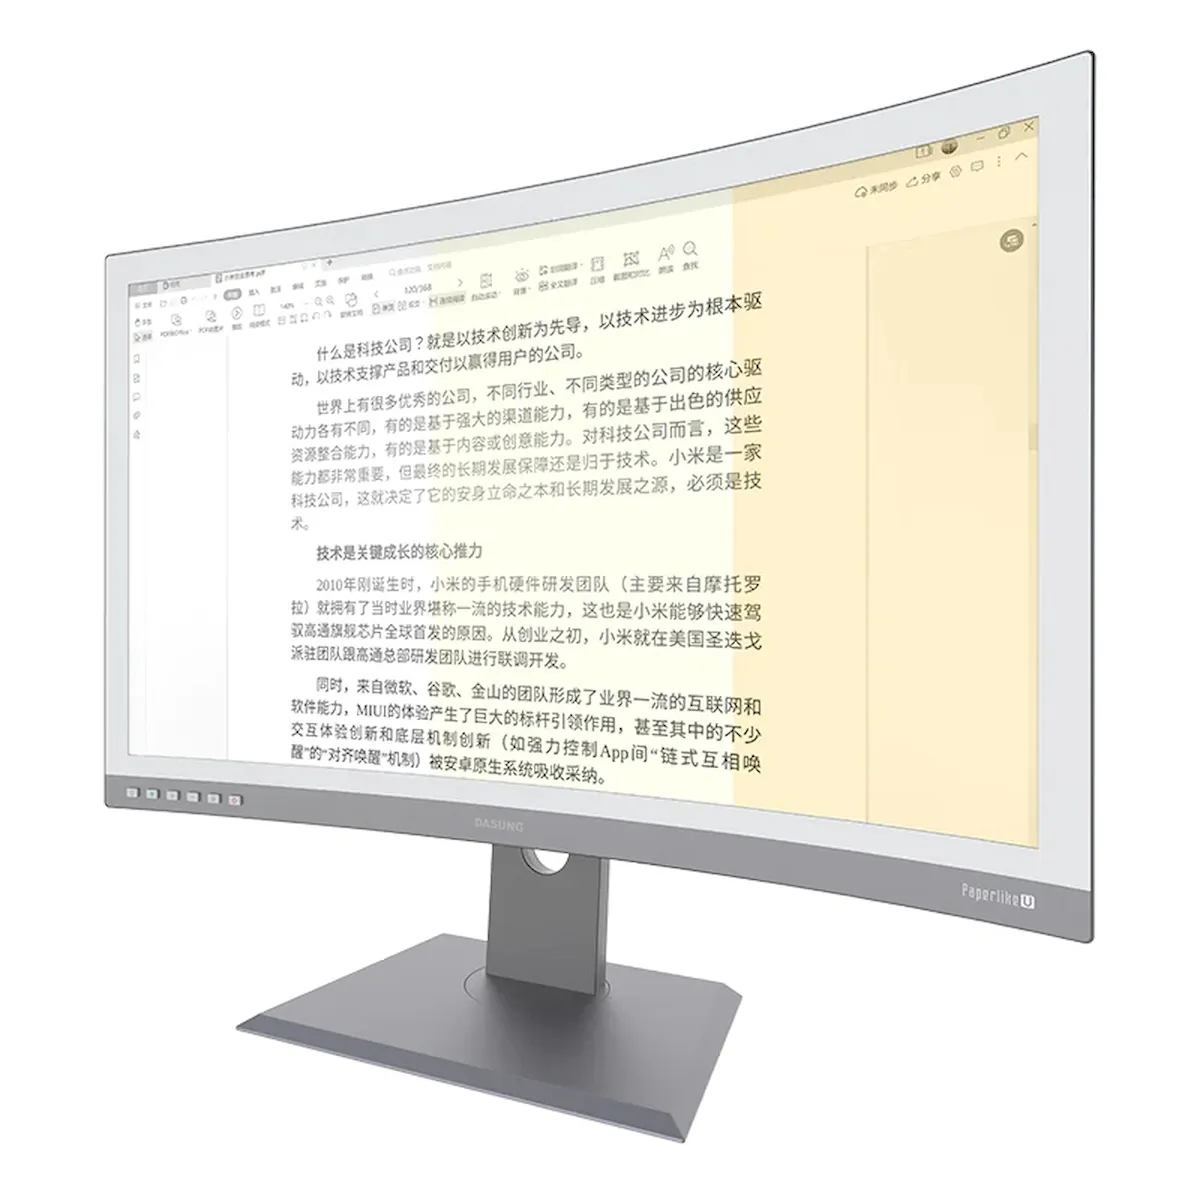 Dasung Paperlike 253 U, um monitor com tela E Ink curva